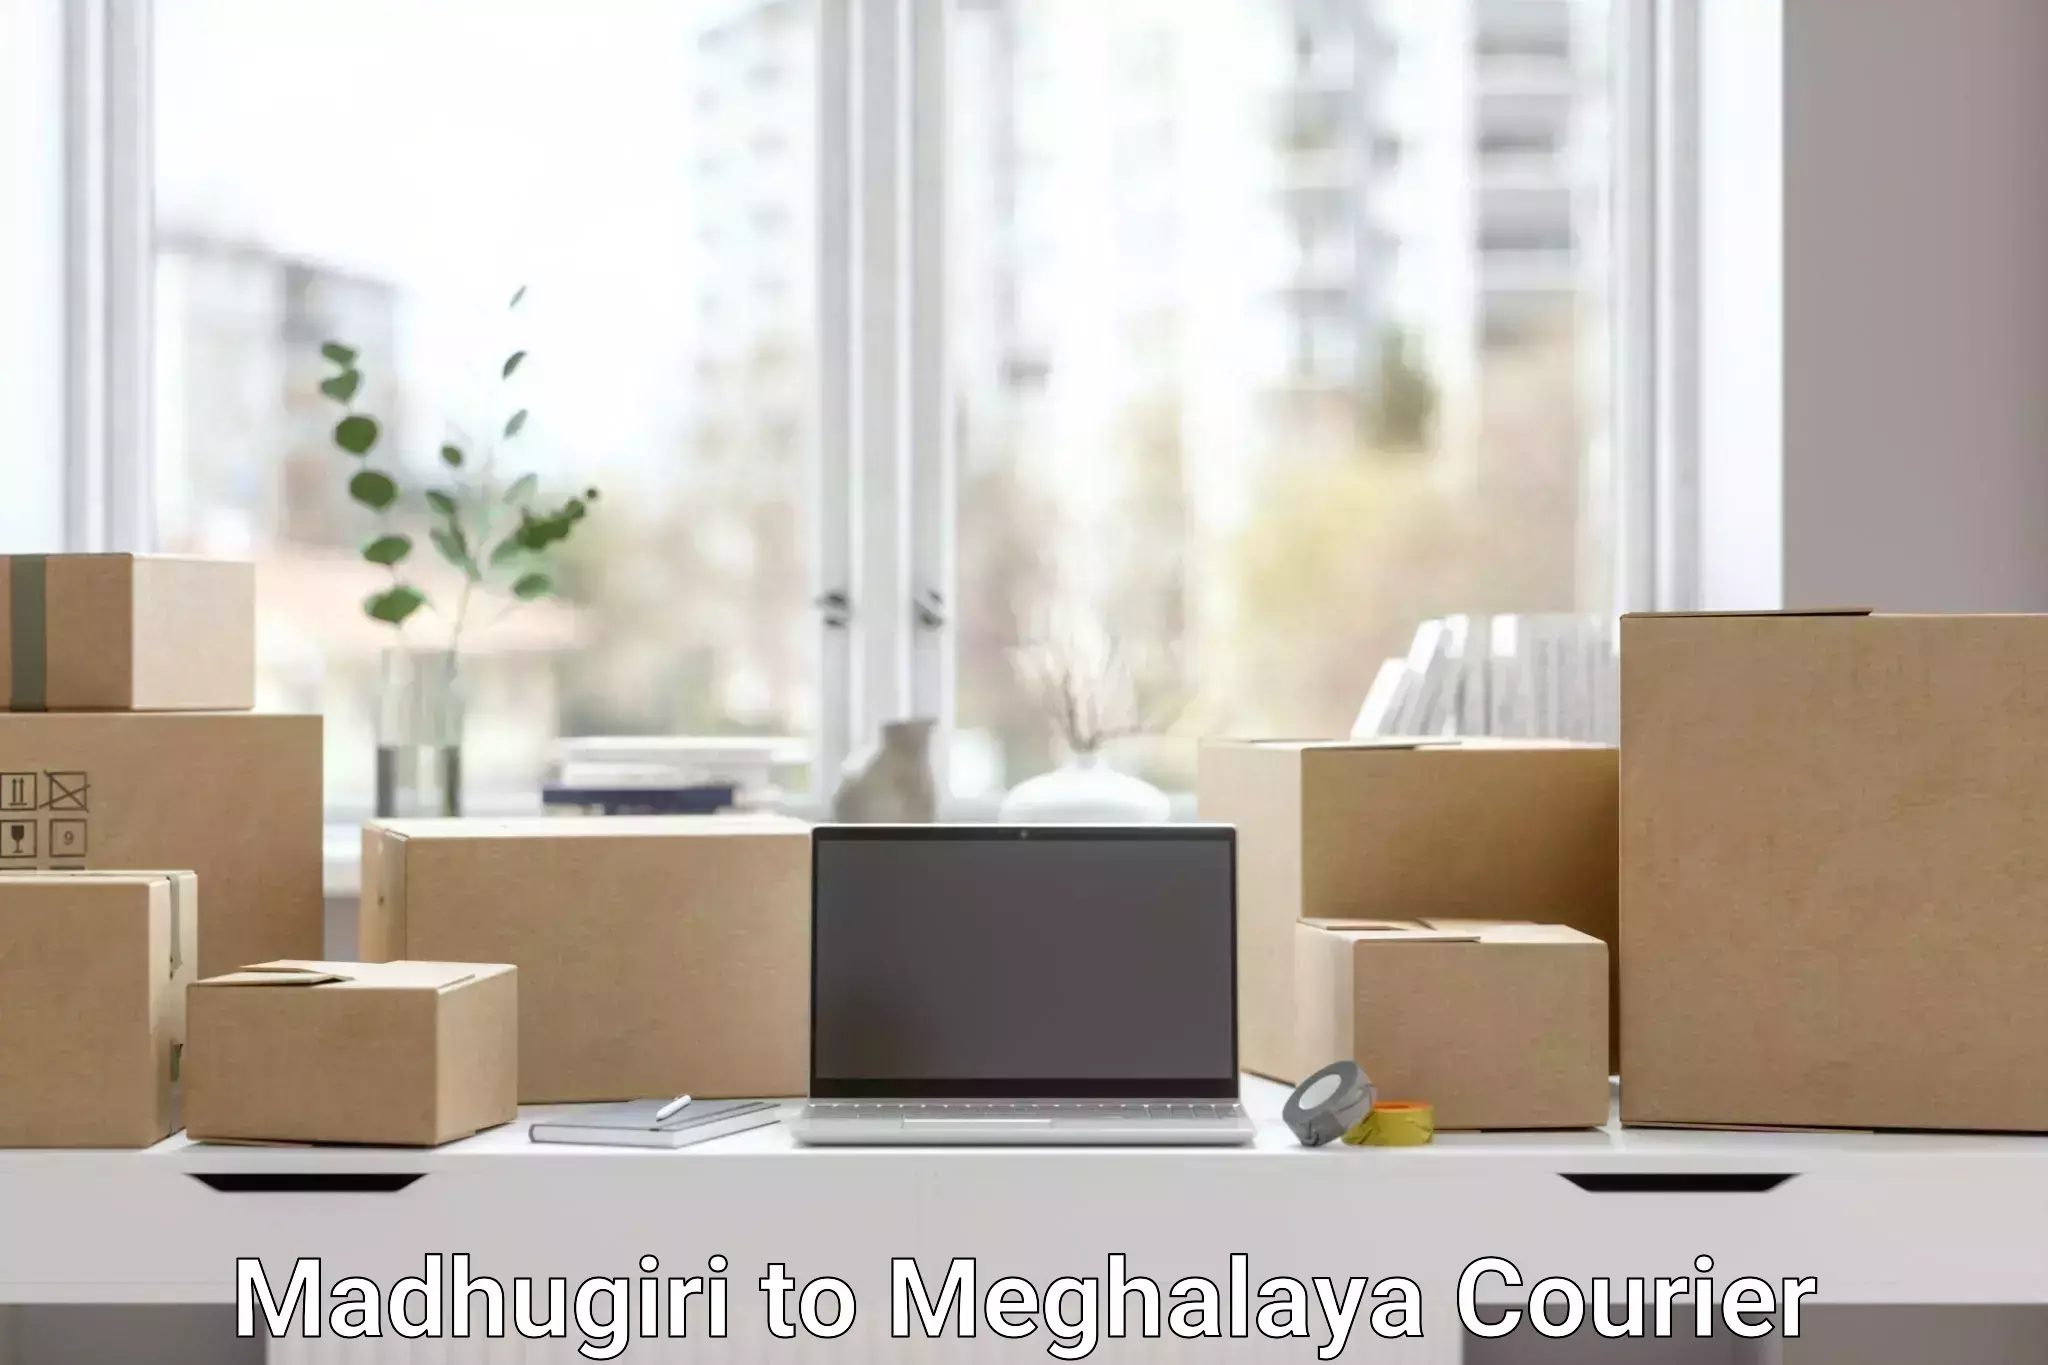 E-commerce fulfillment in Madhugiri to Meghalaya